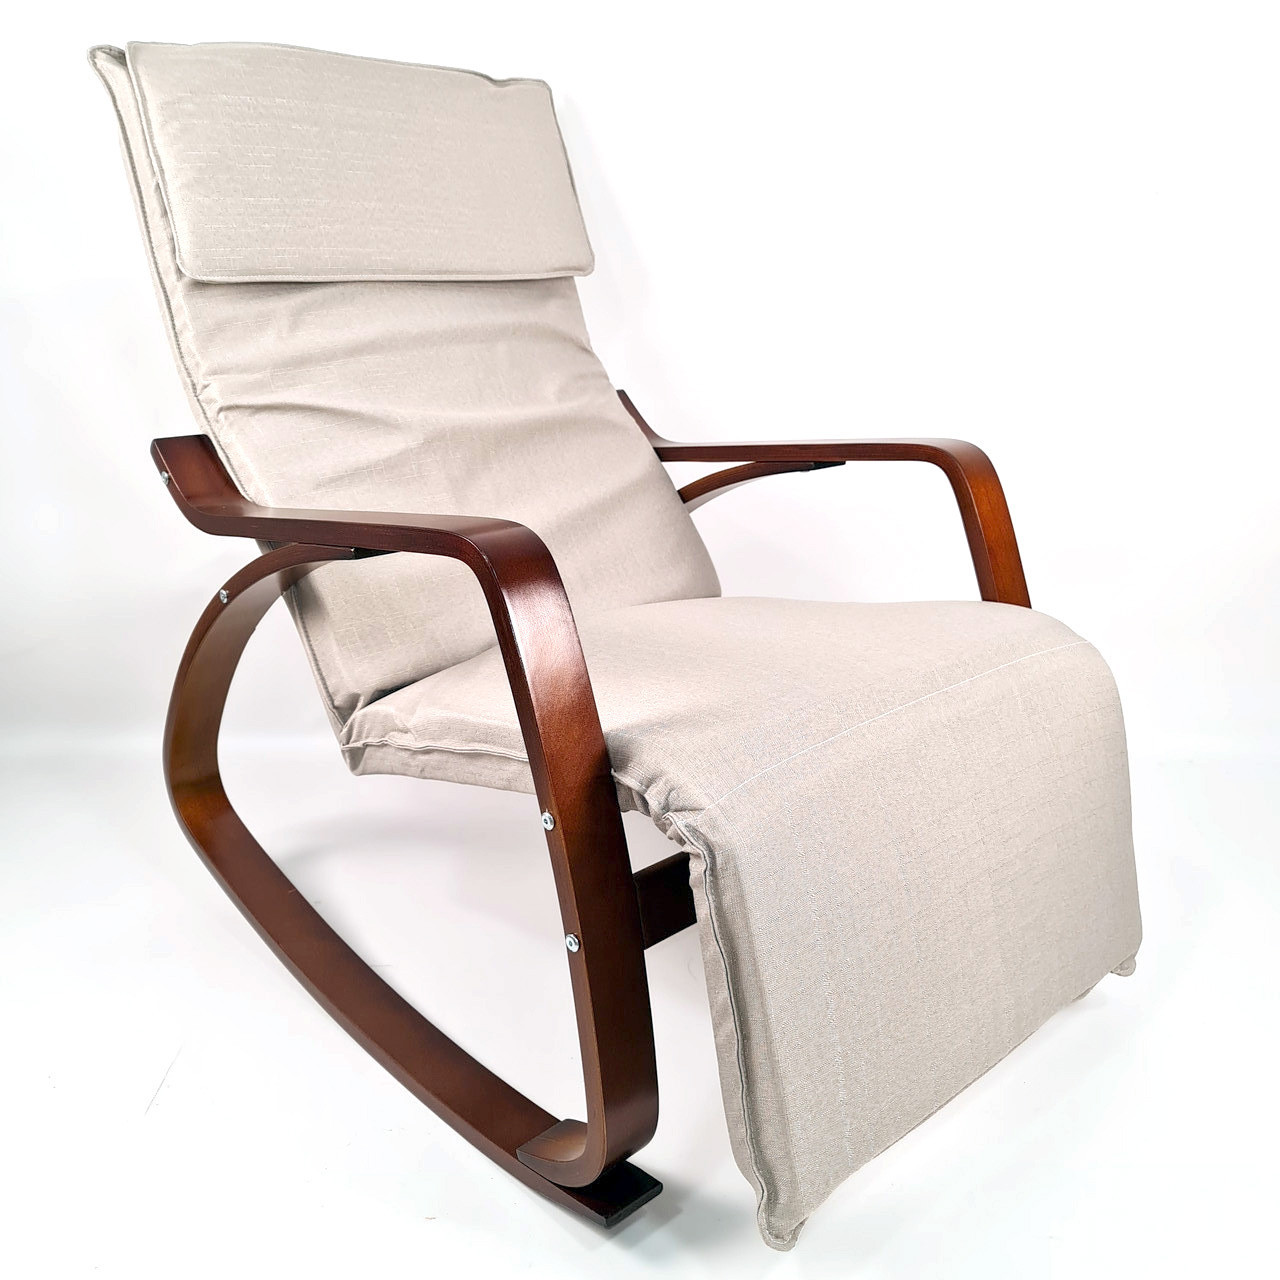 Крісло качалка для дорослих з підголовником сучасна крісло-качалка у вітальню для будинку ARC003 бежевий